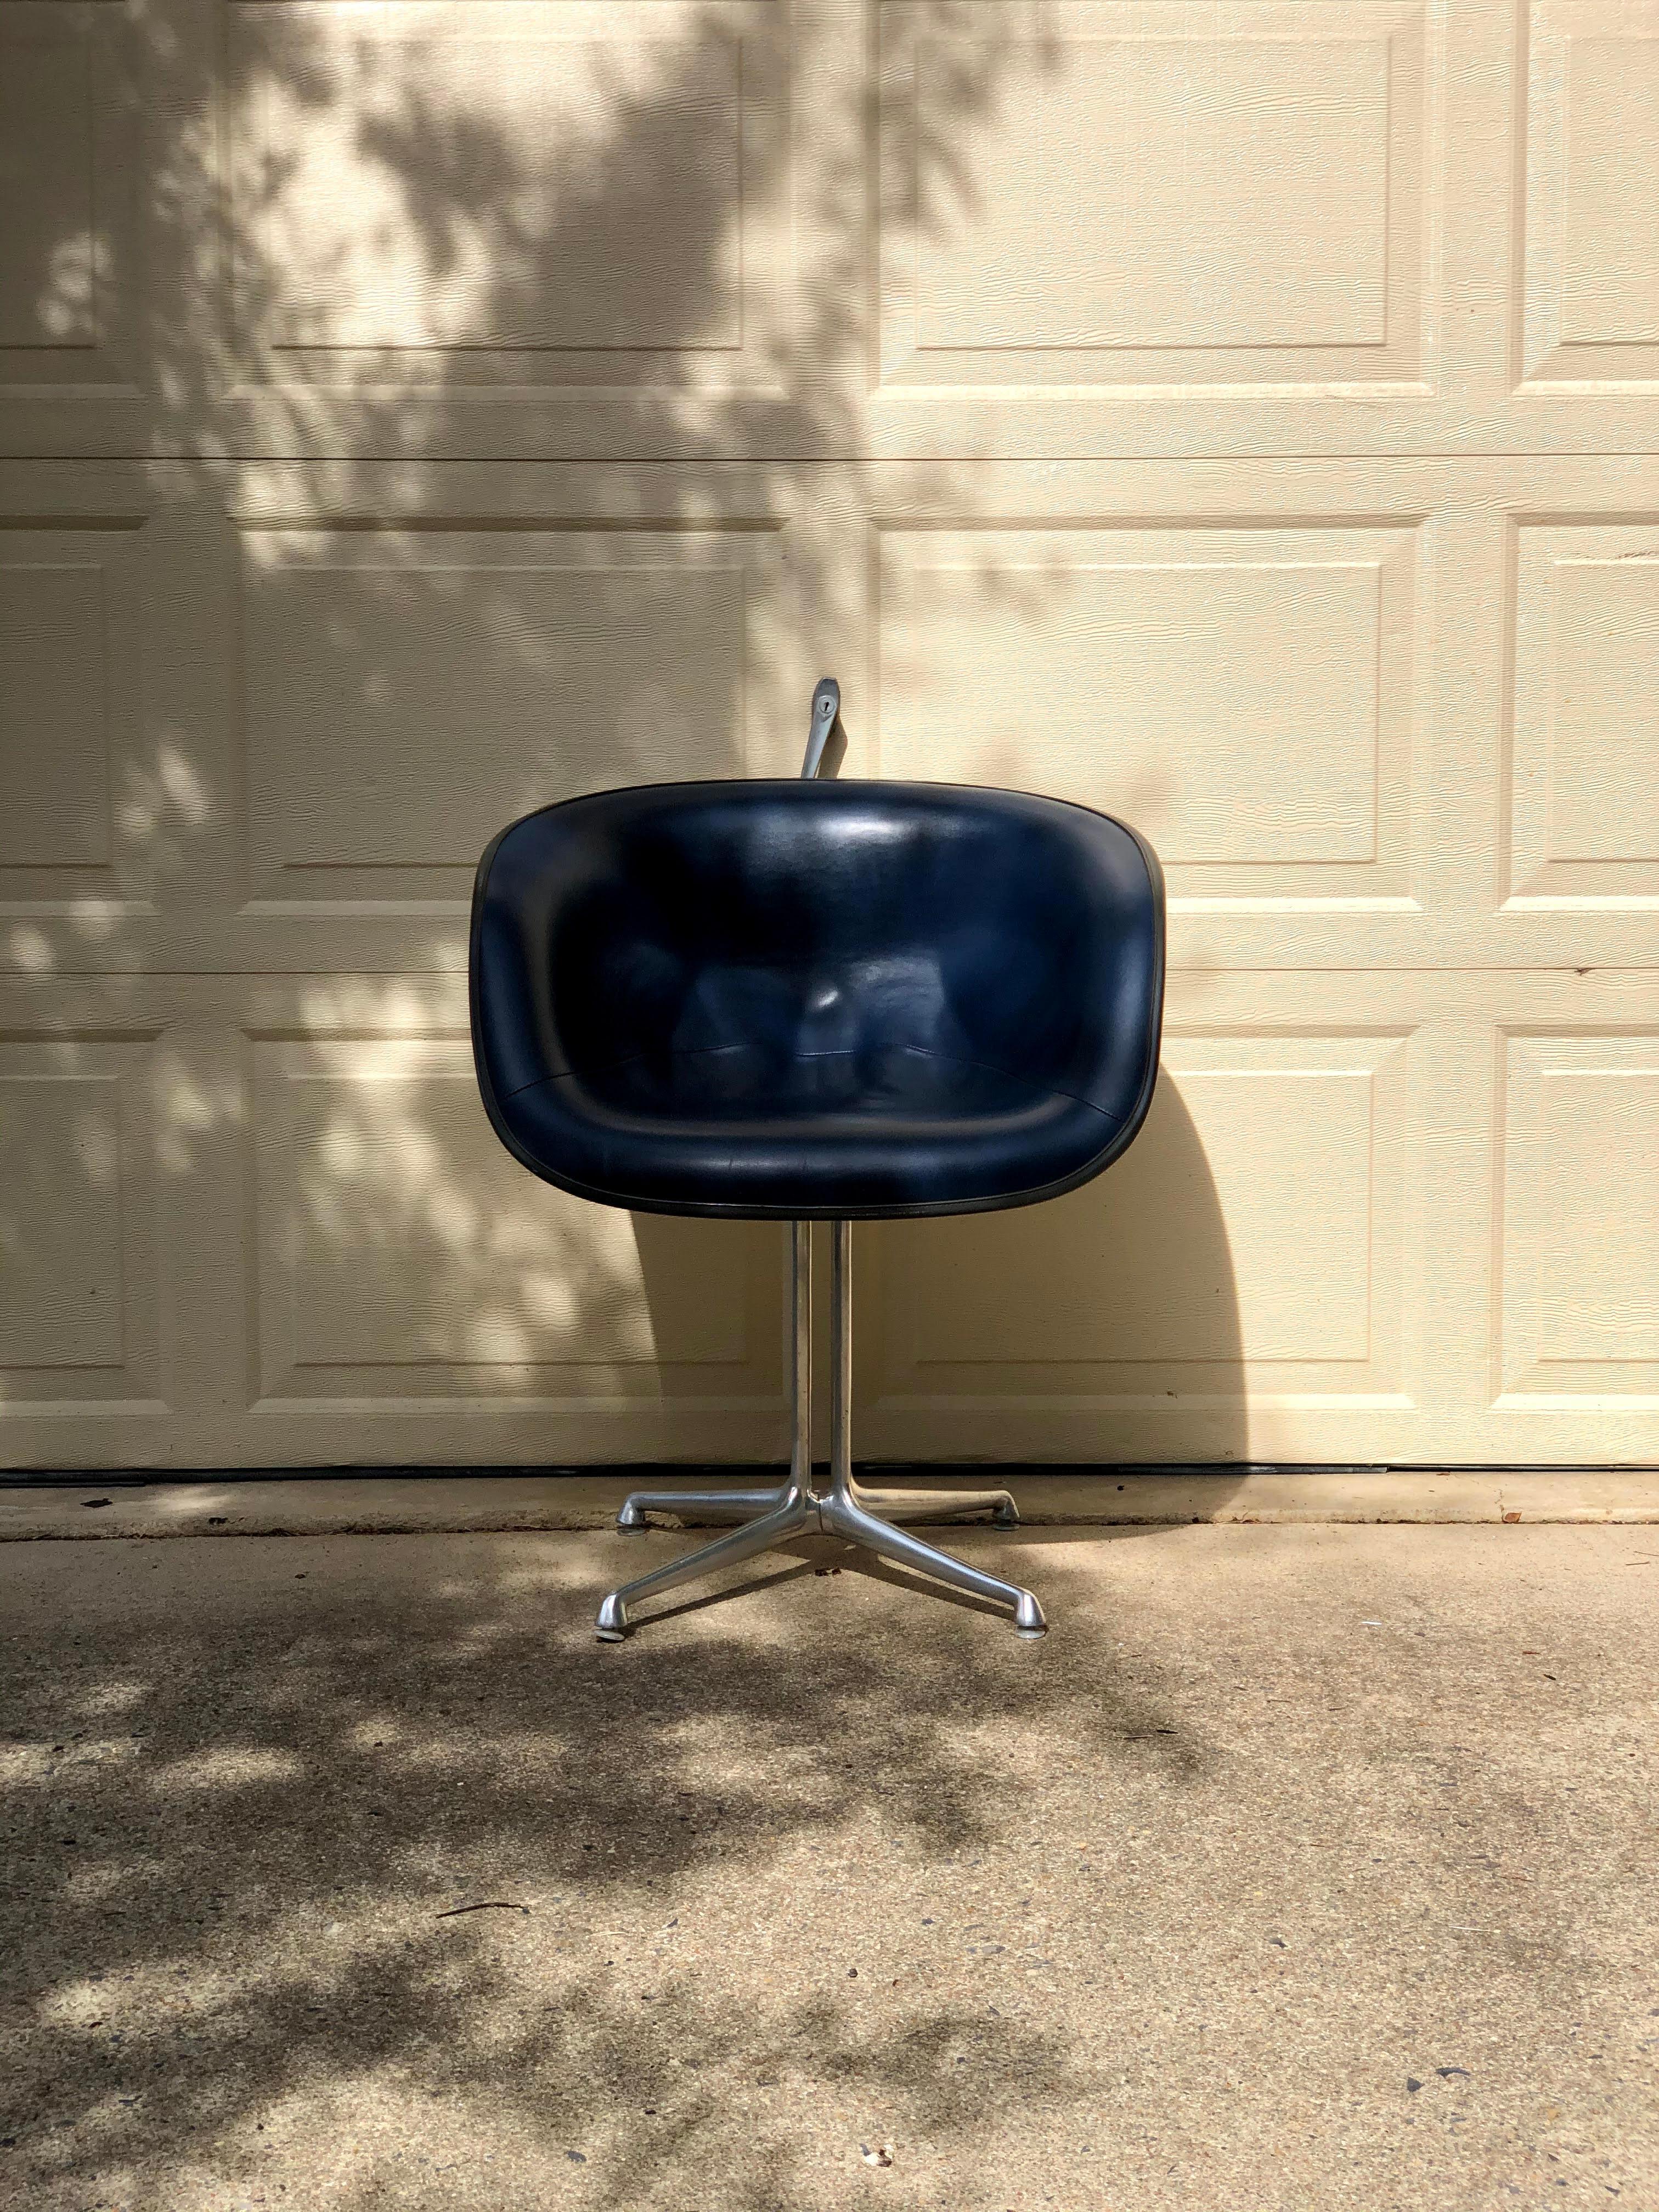 Dieser Sessel ist einer von zwei neuen Fiberglasstühlen, die Charles und Ray Eames 1961 auf Anfrage von Alexander Girard entwarfen, der Sitzgelegenheiten für sein neues Restaurant La Fonda Del Sol in Manhattan benötigte. Manche Sammler nennen diese